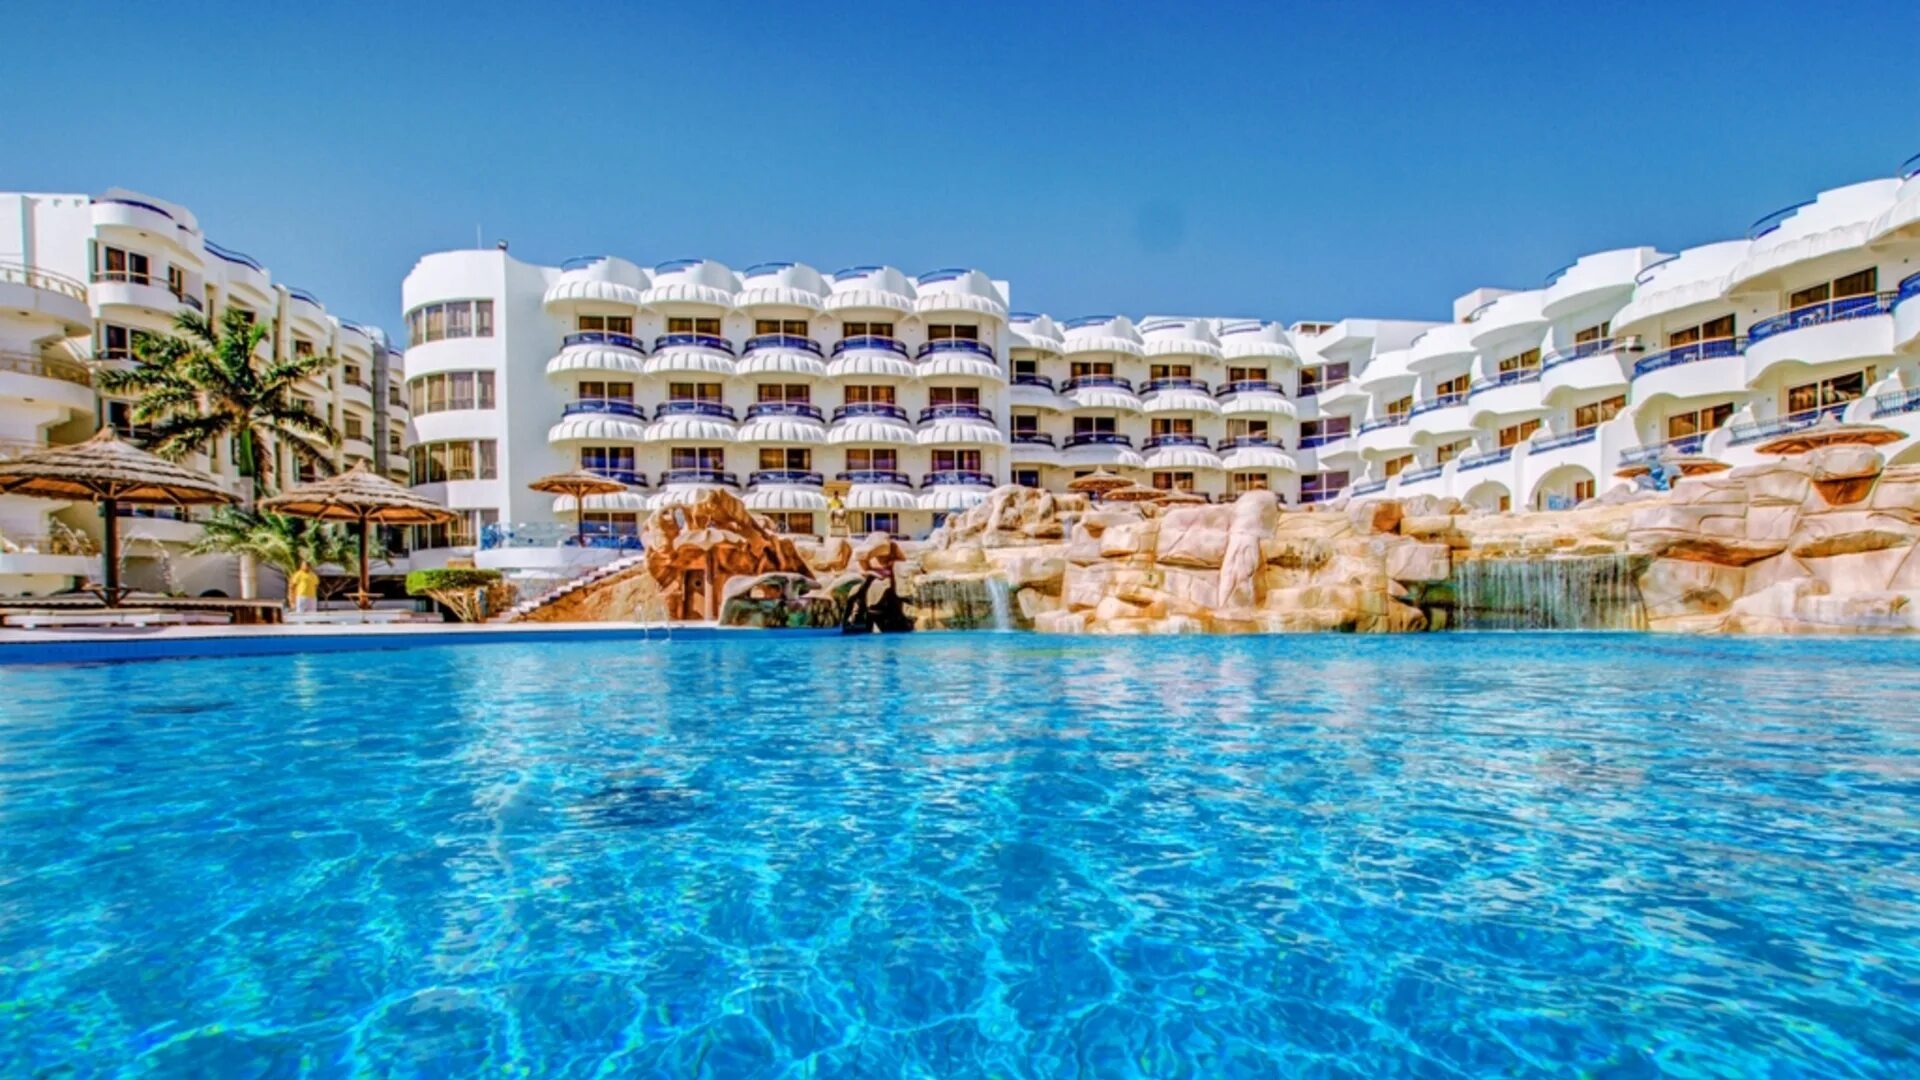 Отель Sea Gull Beach Resort & Club 4*. Sea Gull 4 Египет. Отель Seagull Beach Resort Hurghada. Сигал Бич Резорт 4 Хургада.